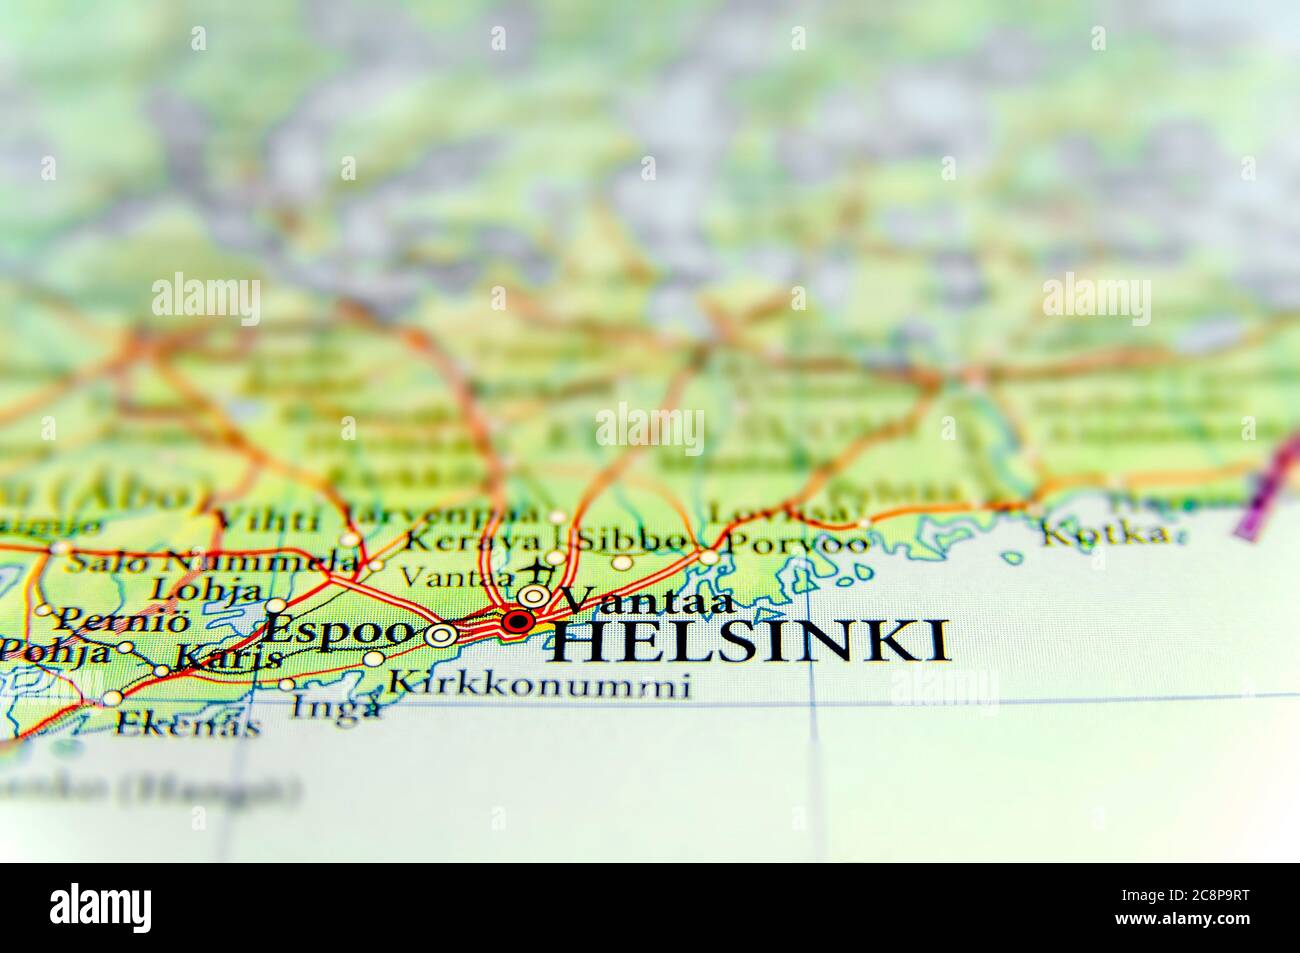 vantaa finland map